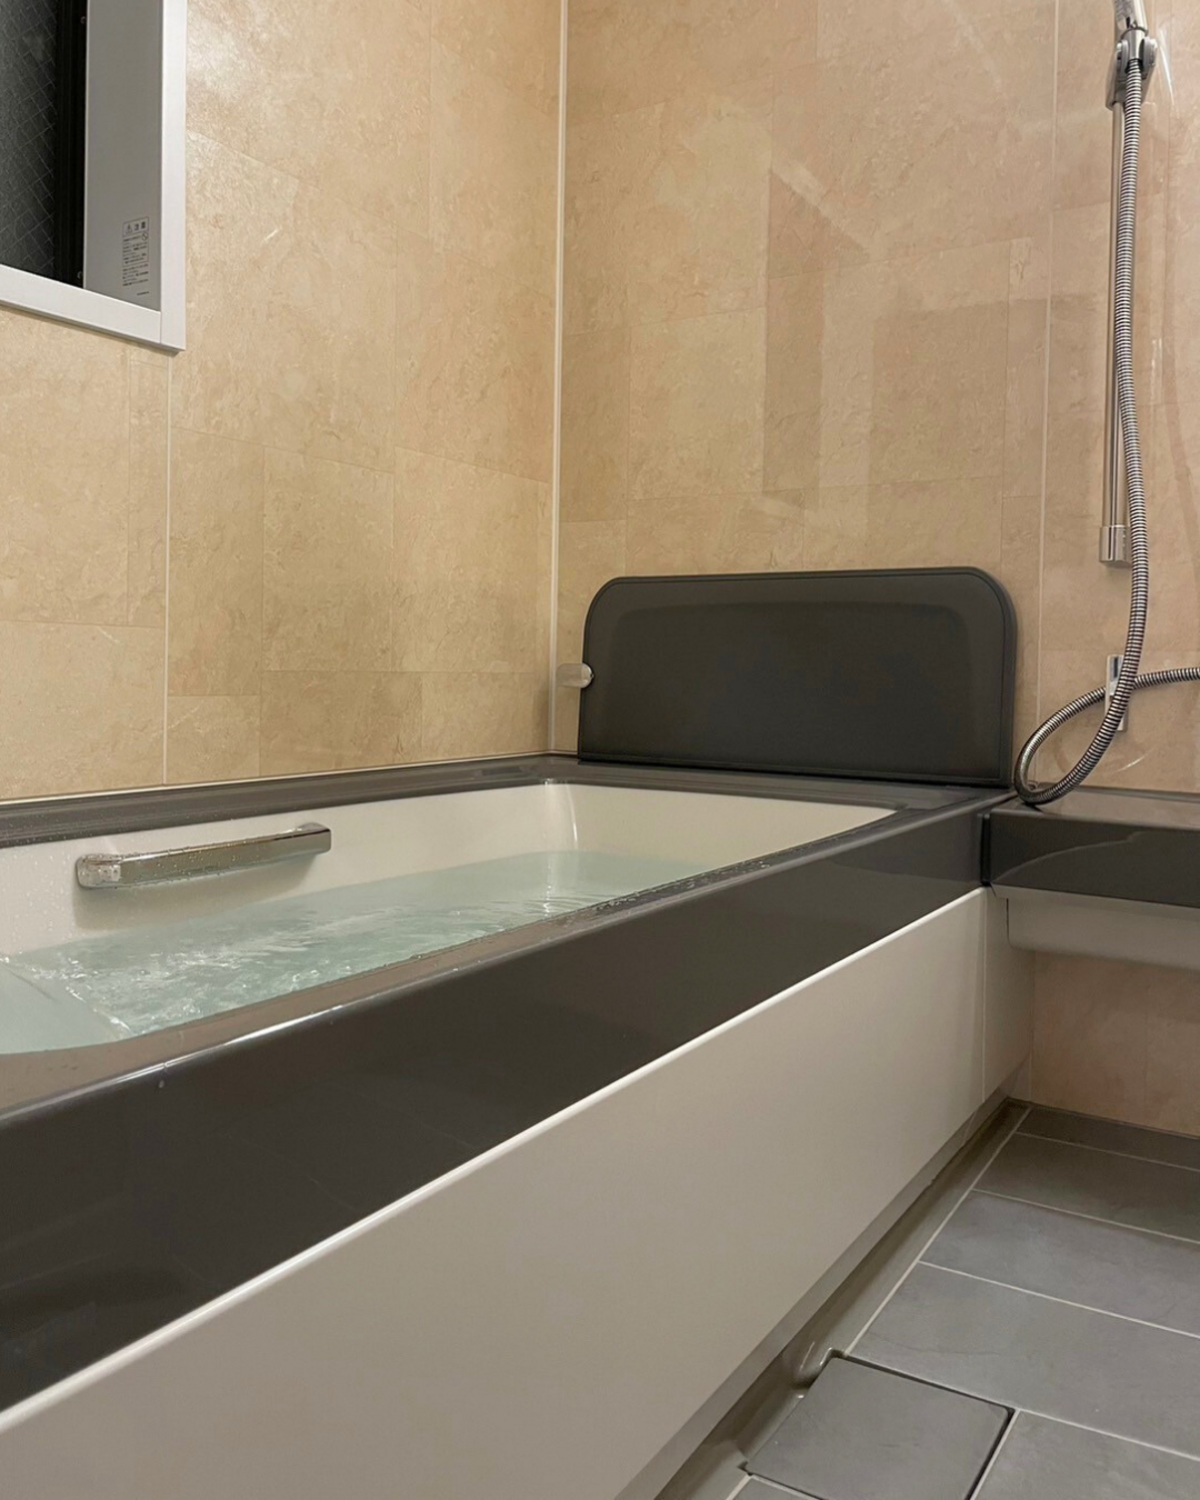 【浴室】LIXILスパージュ、暖房付き換気扇